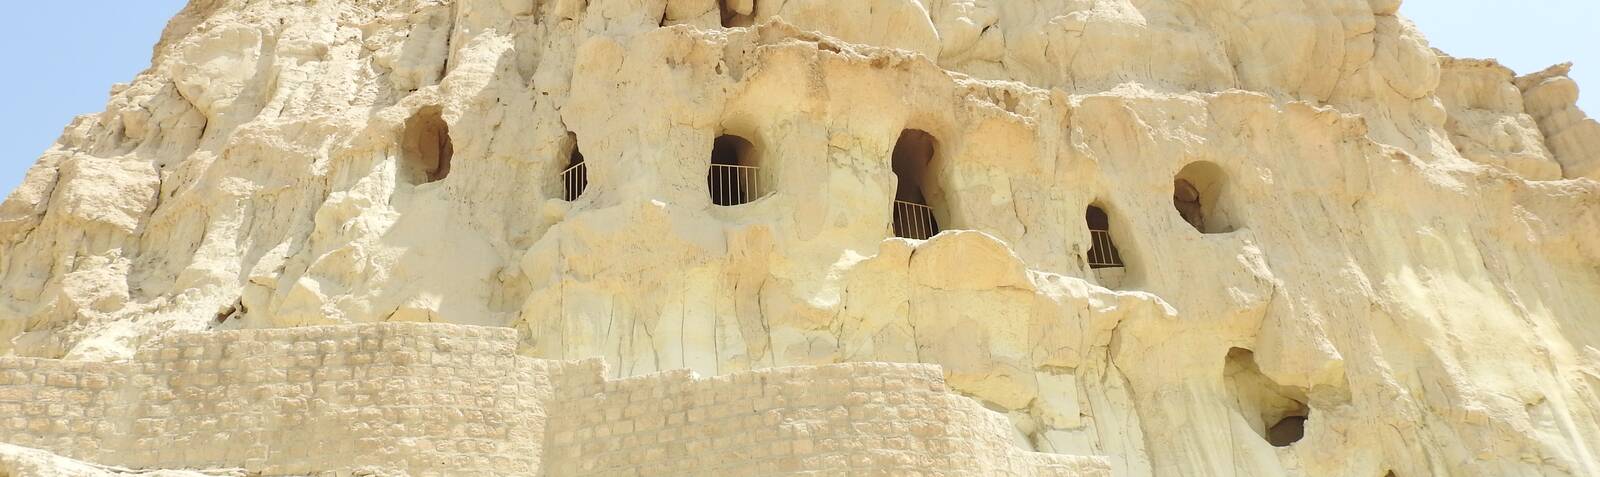 La Cueva de Kharbas